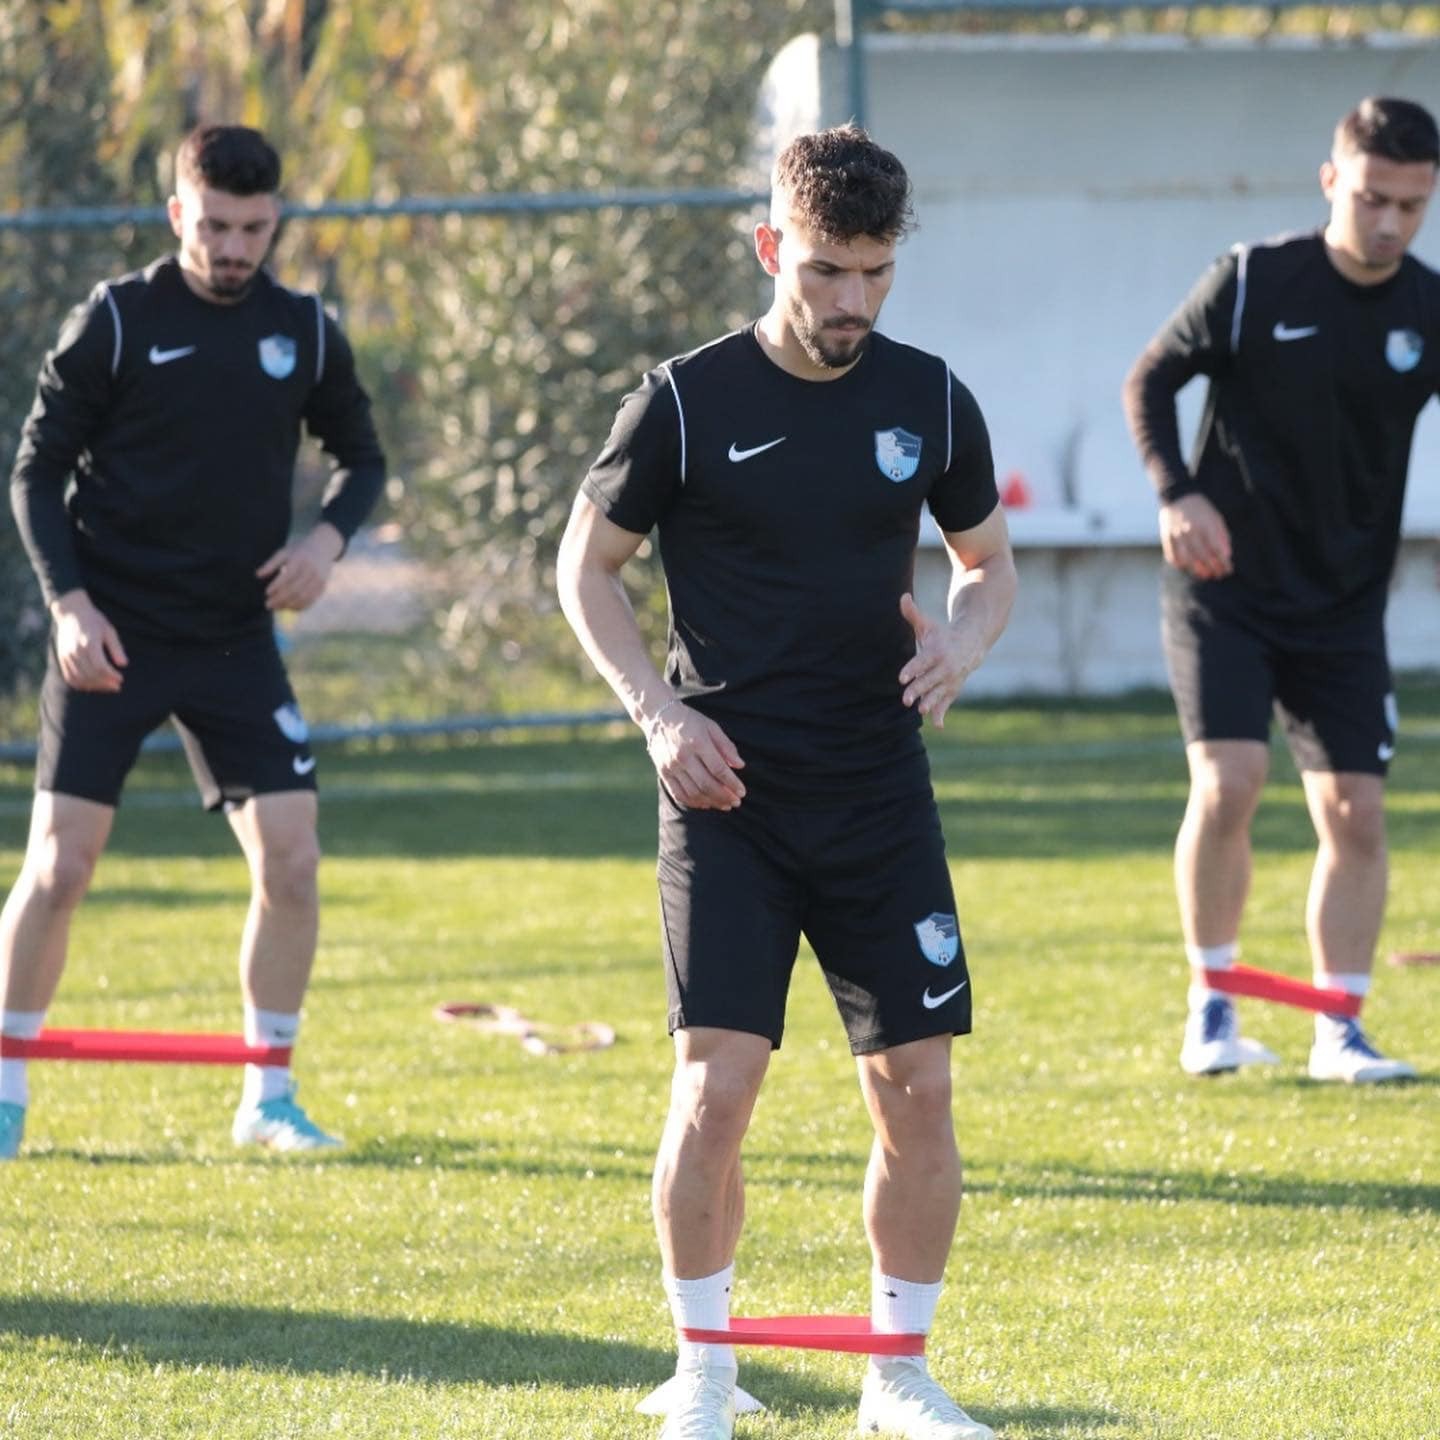 Erzurumspor FK Antalya’da girdiği kampta lig hazırlıklarını sürdürüyor